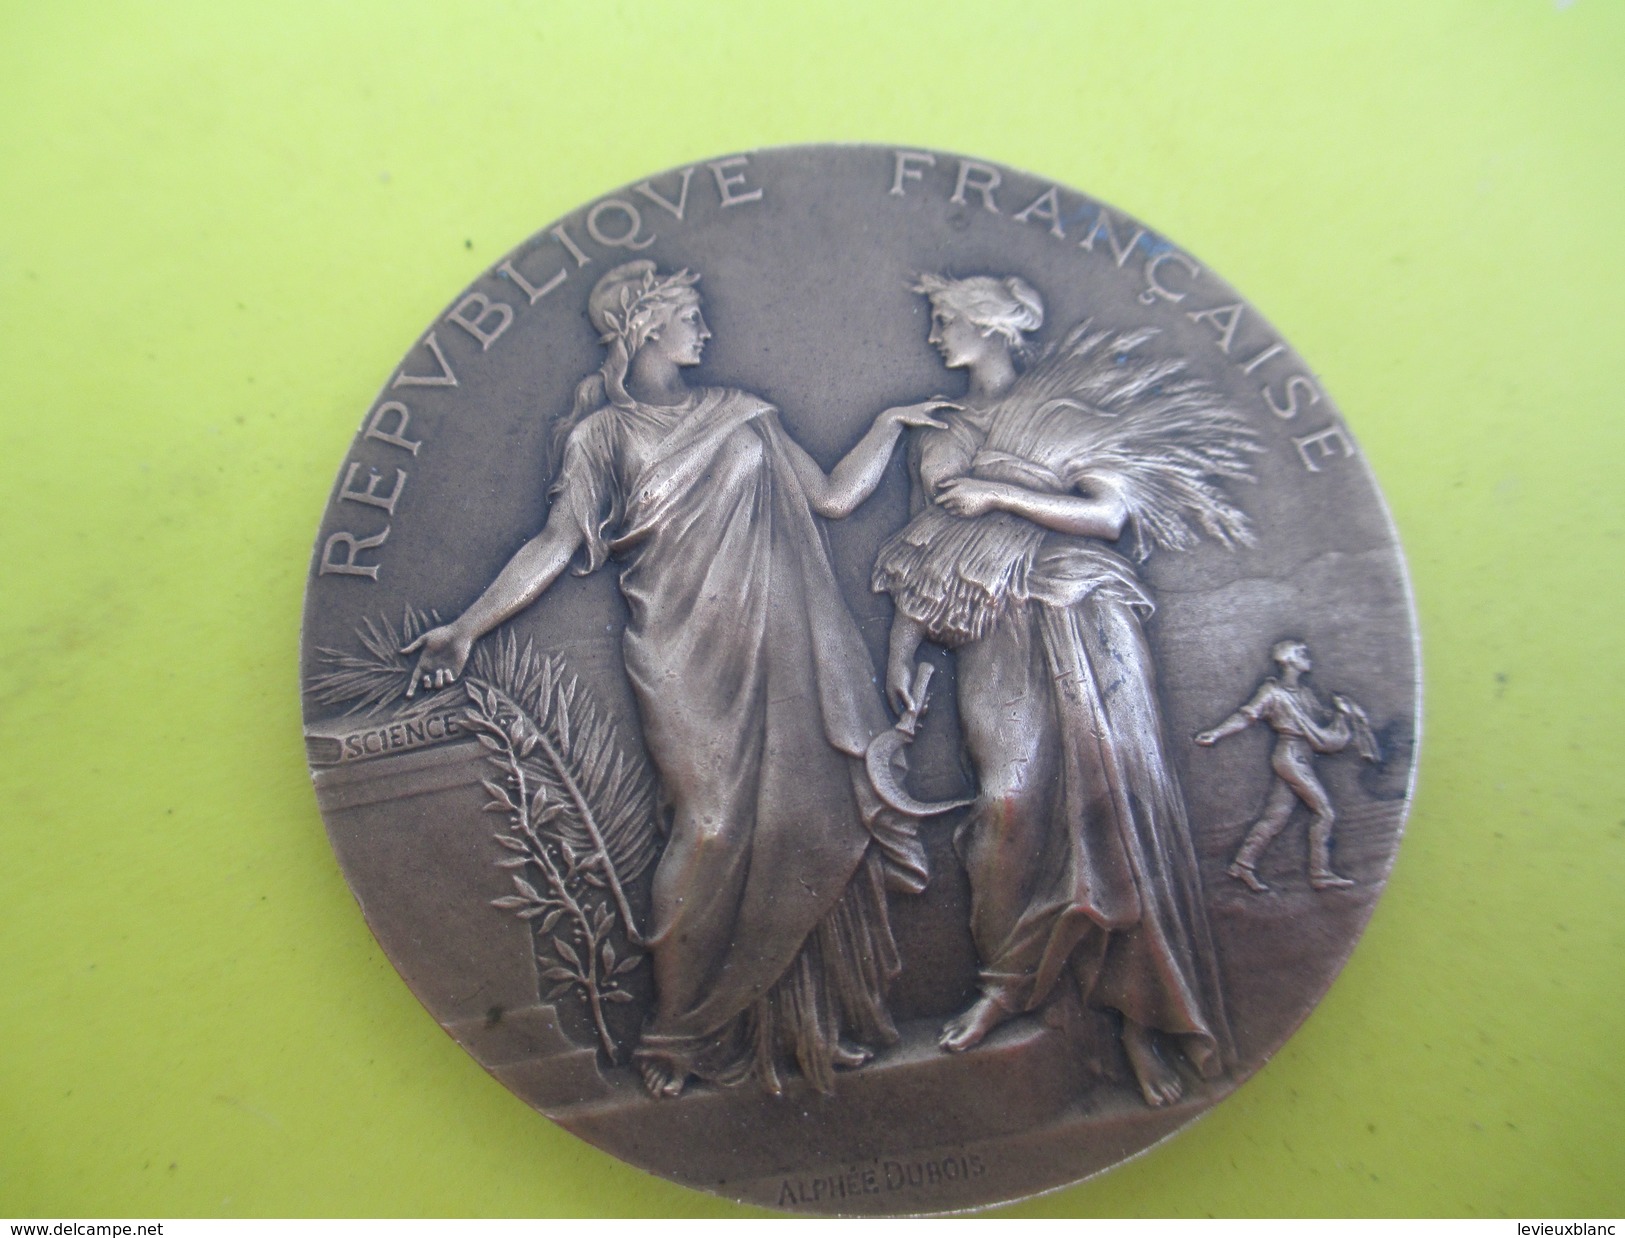 Médaille De Table/Ministére De L'Agriculture/Concours Central Hippique/Paris/Alphée DUBOIS/1908      SPO215 - Equitation